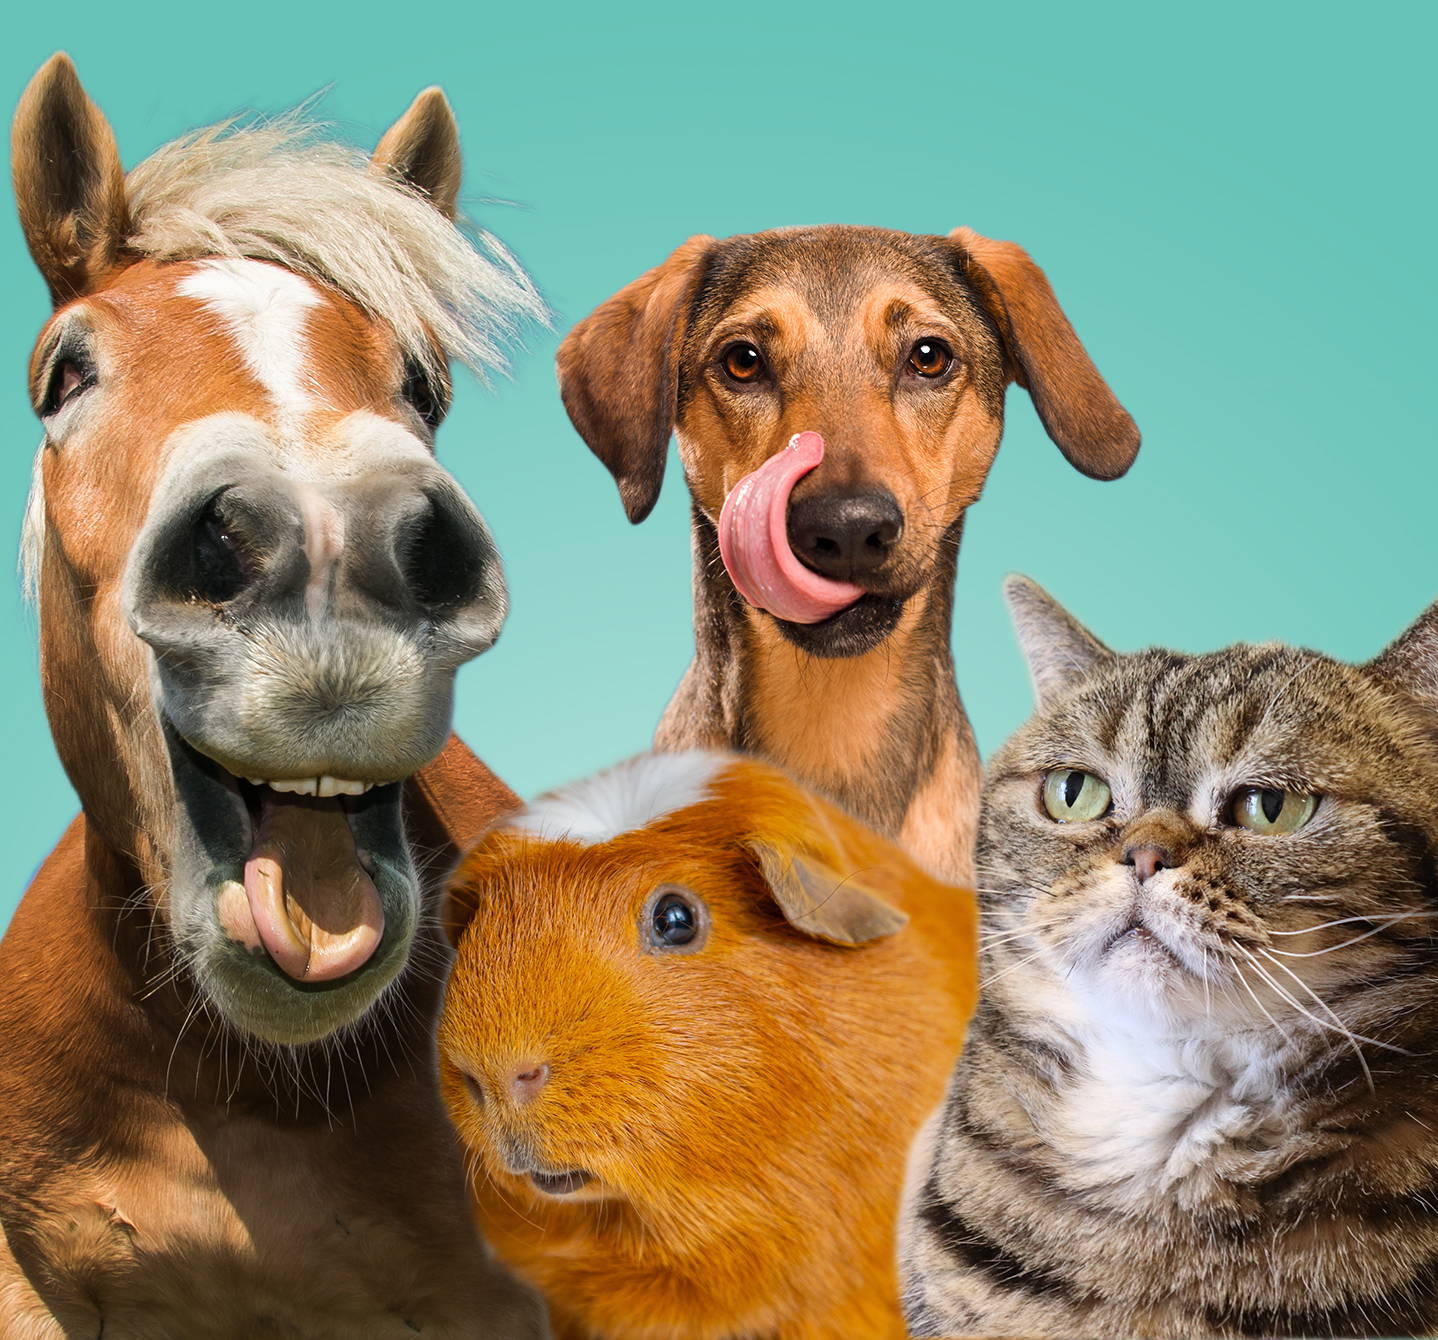  Co je to alergie na zvířata? Olizující se pes, mrzutá kočka, morče či kůň, všechna tato zvířata mohou způsobit alergické reakce